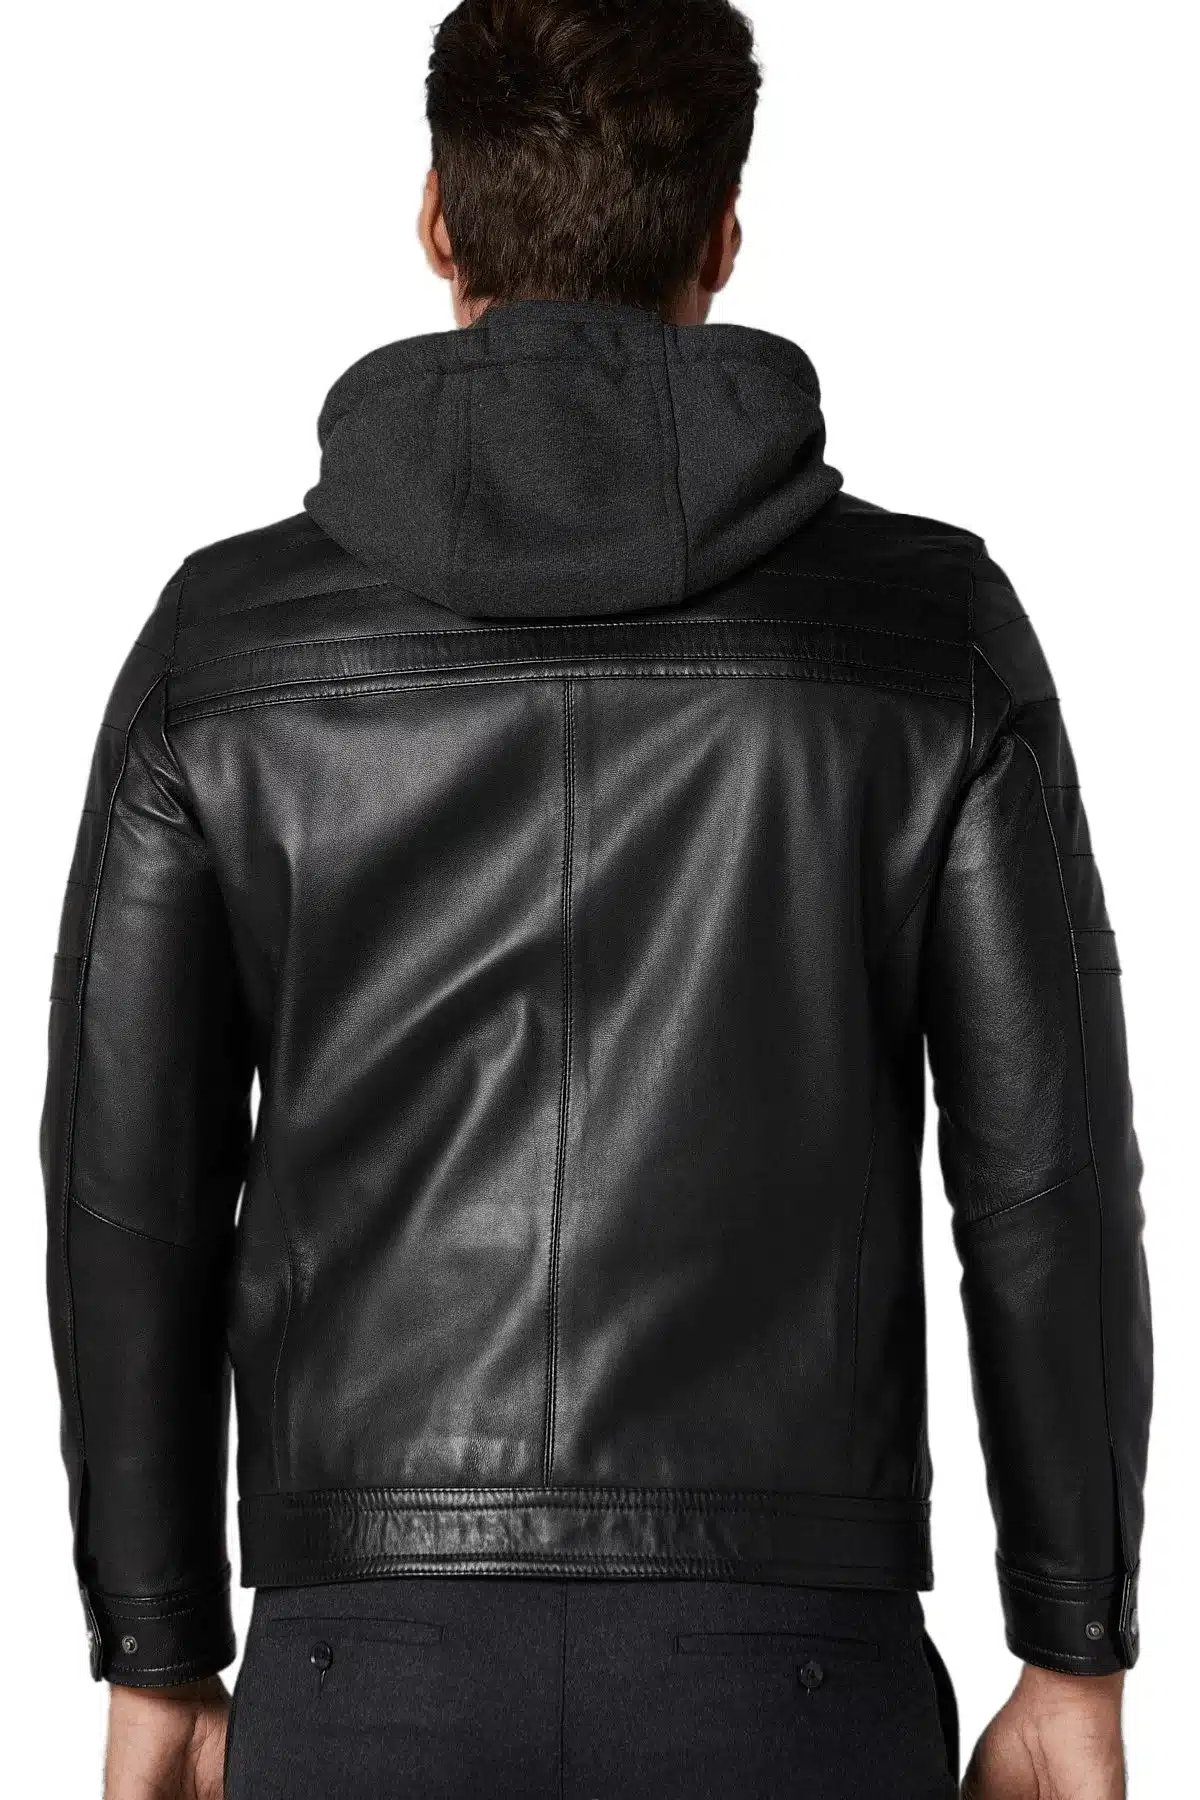 Harper Black Men’s Hoody Leather Jacket (3)_result